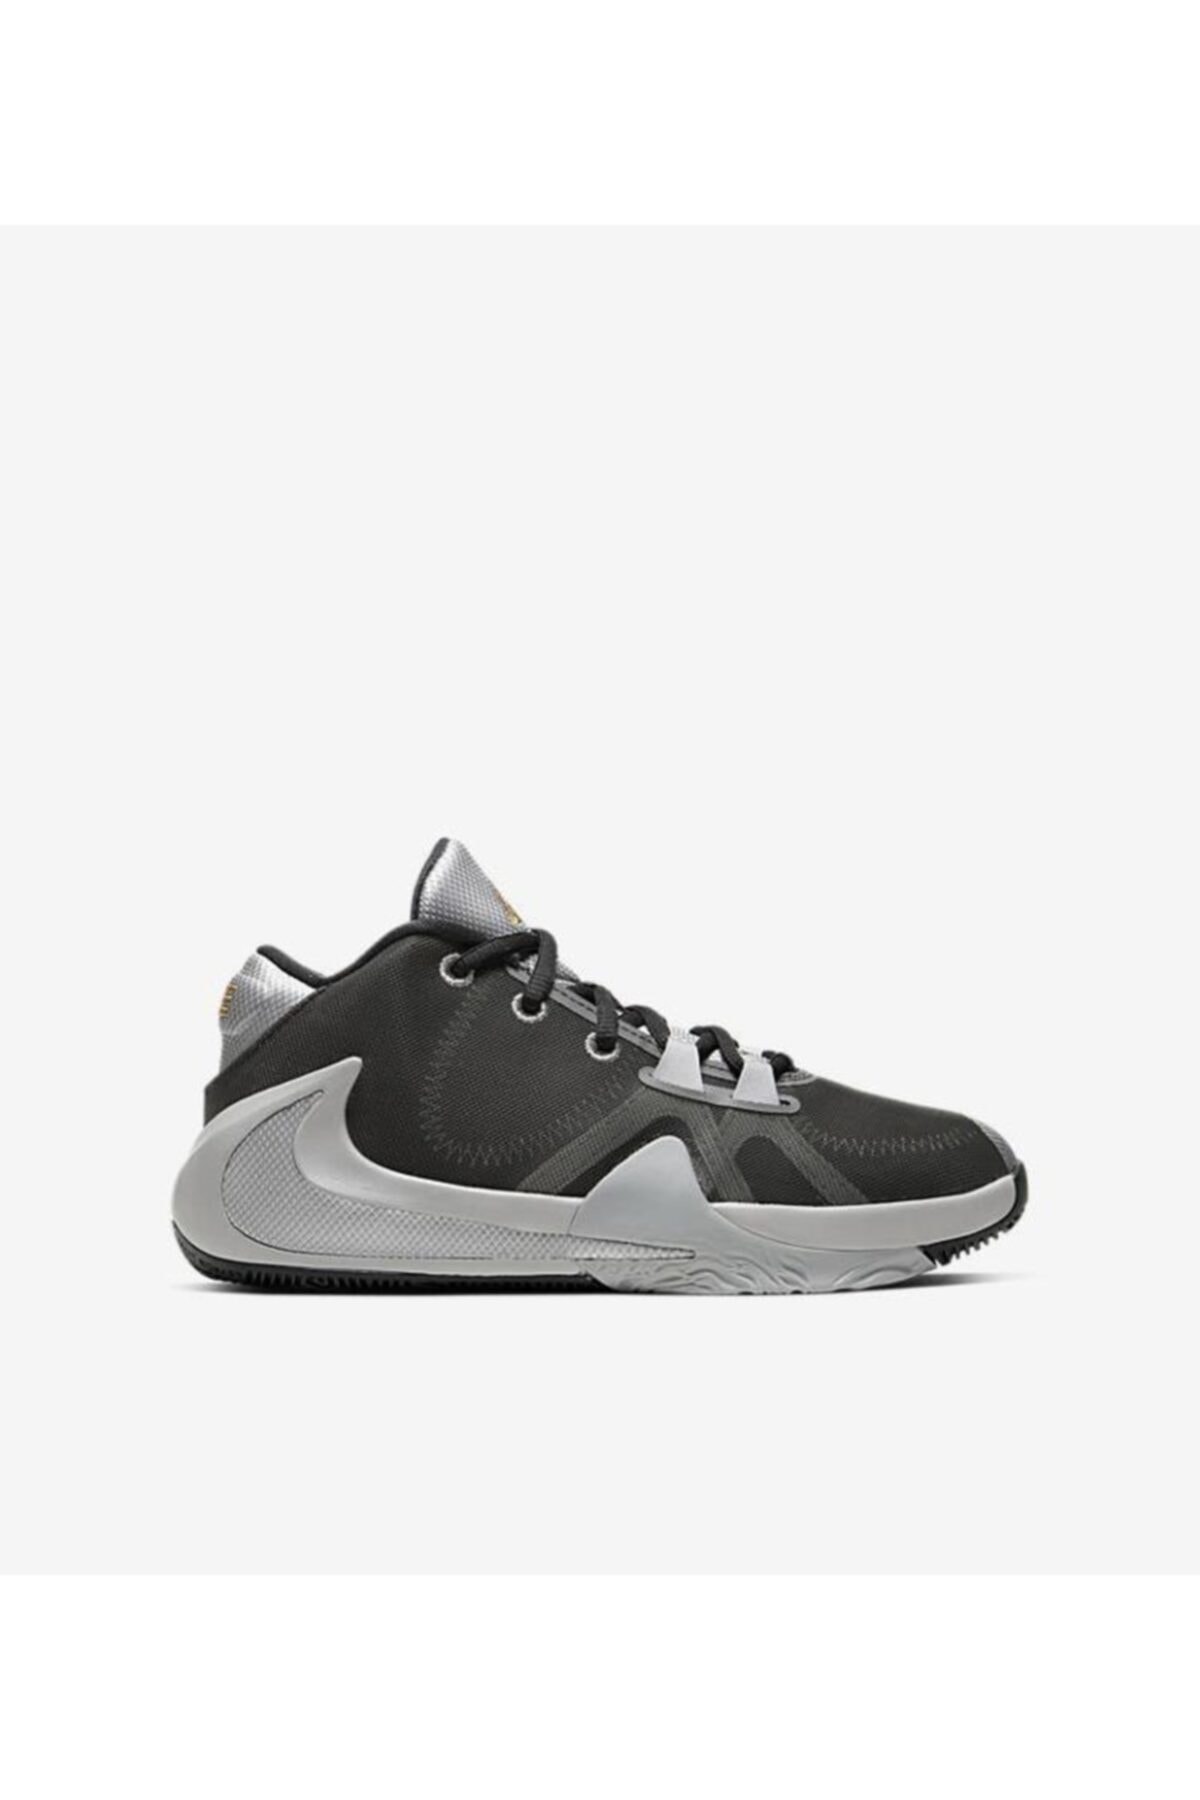 Nike Zoom Freak 1 Bq5633-050 Basketbol Ayakkabısı